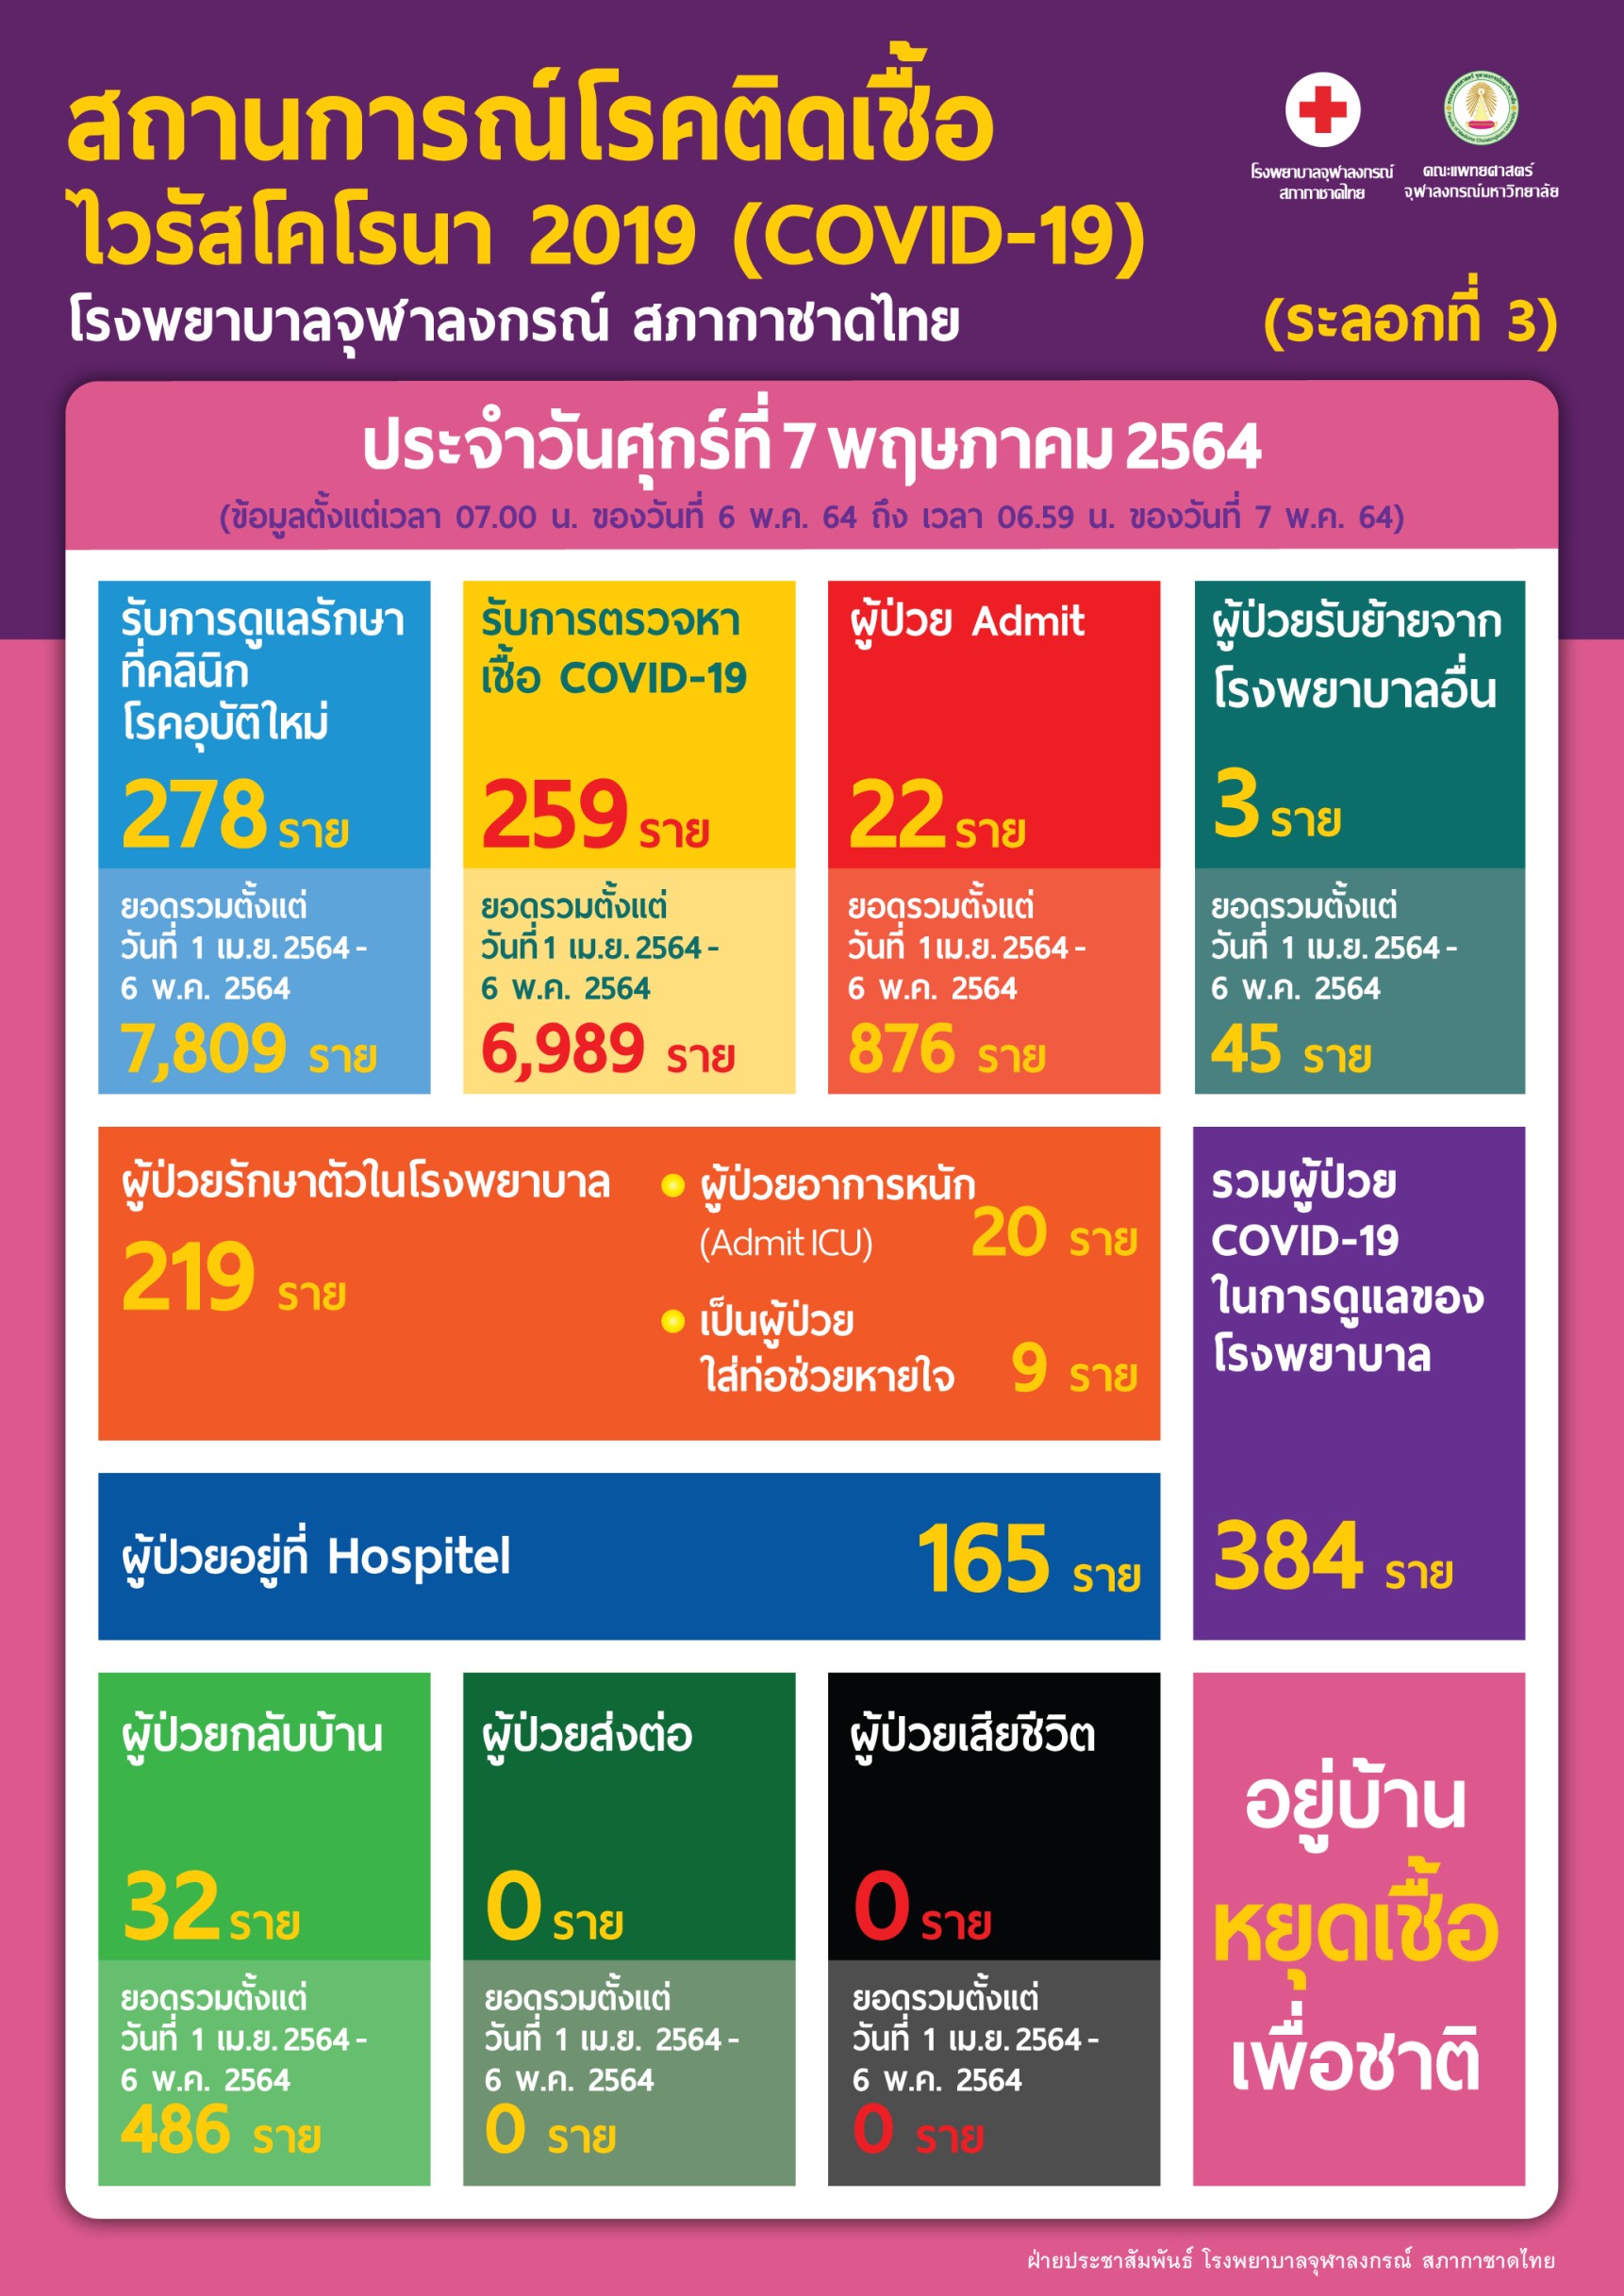 สถานการณ์โรคติดเชื้อ ไวรัสโคโรนา 2019 (COVID-19) โรงพยาบาลจุฬาลงกรณ์ สภากาชาดไทย (ระลอกที่ 3) ประจำวันศุกร์ที่ 7 พฤษภาคม 2564